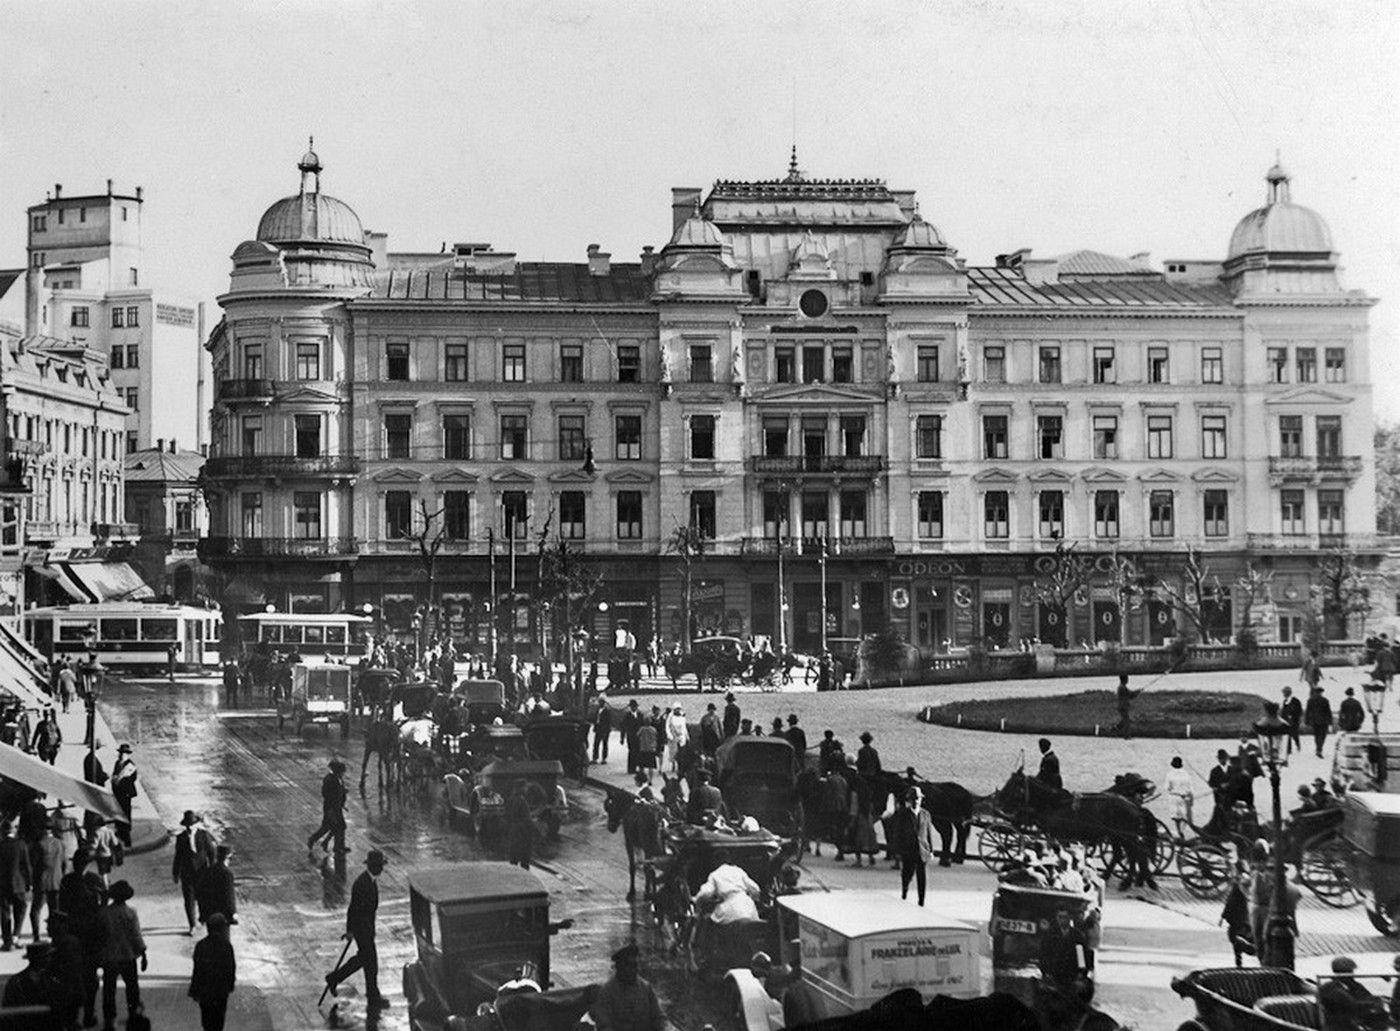 Calea Victoriei, la Cercul Militar, prin 1920. Un trafic pestriț și amestecat: trăsuri, mașini, tramvaie, omnibuze, camioane și foarte mulți pietoni. Foto: <a target="_blank" rel="noreferrer noopener" href="https://bucurestiulmeudrag.ro/autor/nicolae-ionescu/" target="_blank">Nicolae Ionescu, Bucureștiul meu drag</a> / Creative Commons 3.0